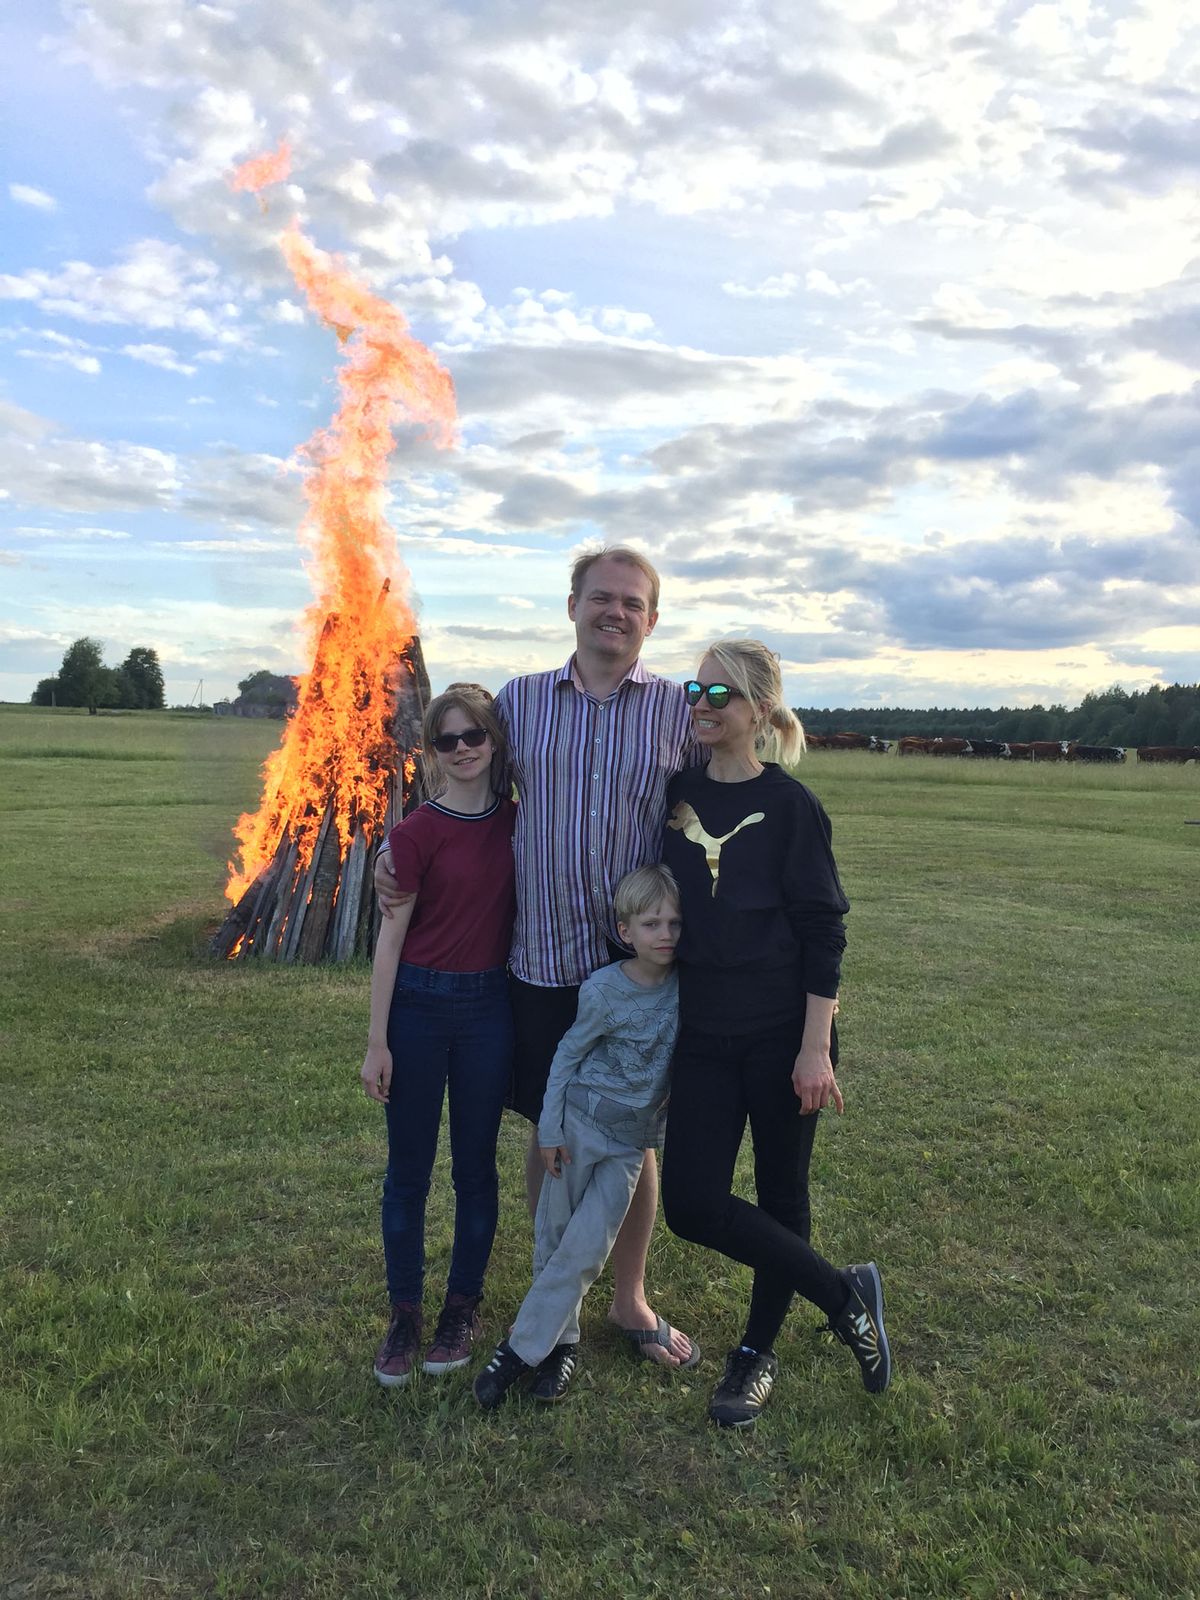 Посещение огня Яанова дня в Эстонии для Ренеэ Меристе является традицией. На этом снимке он вместе с супругой Маарьей и детьми Дорой Лийзой и Ангусом Мартином у костра Яанова дня в Калина.